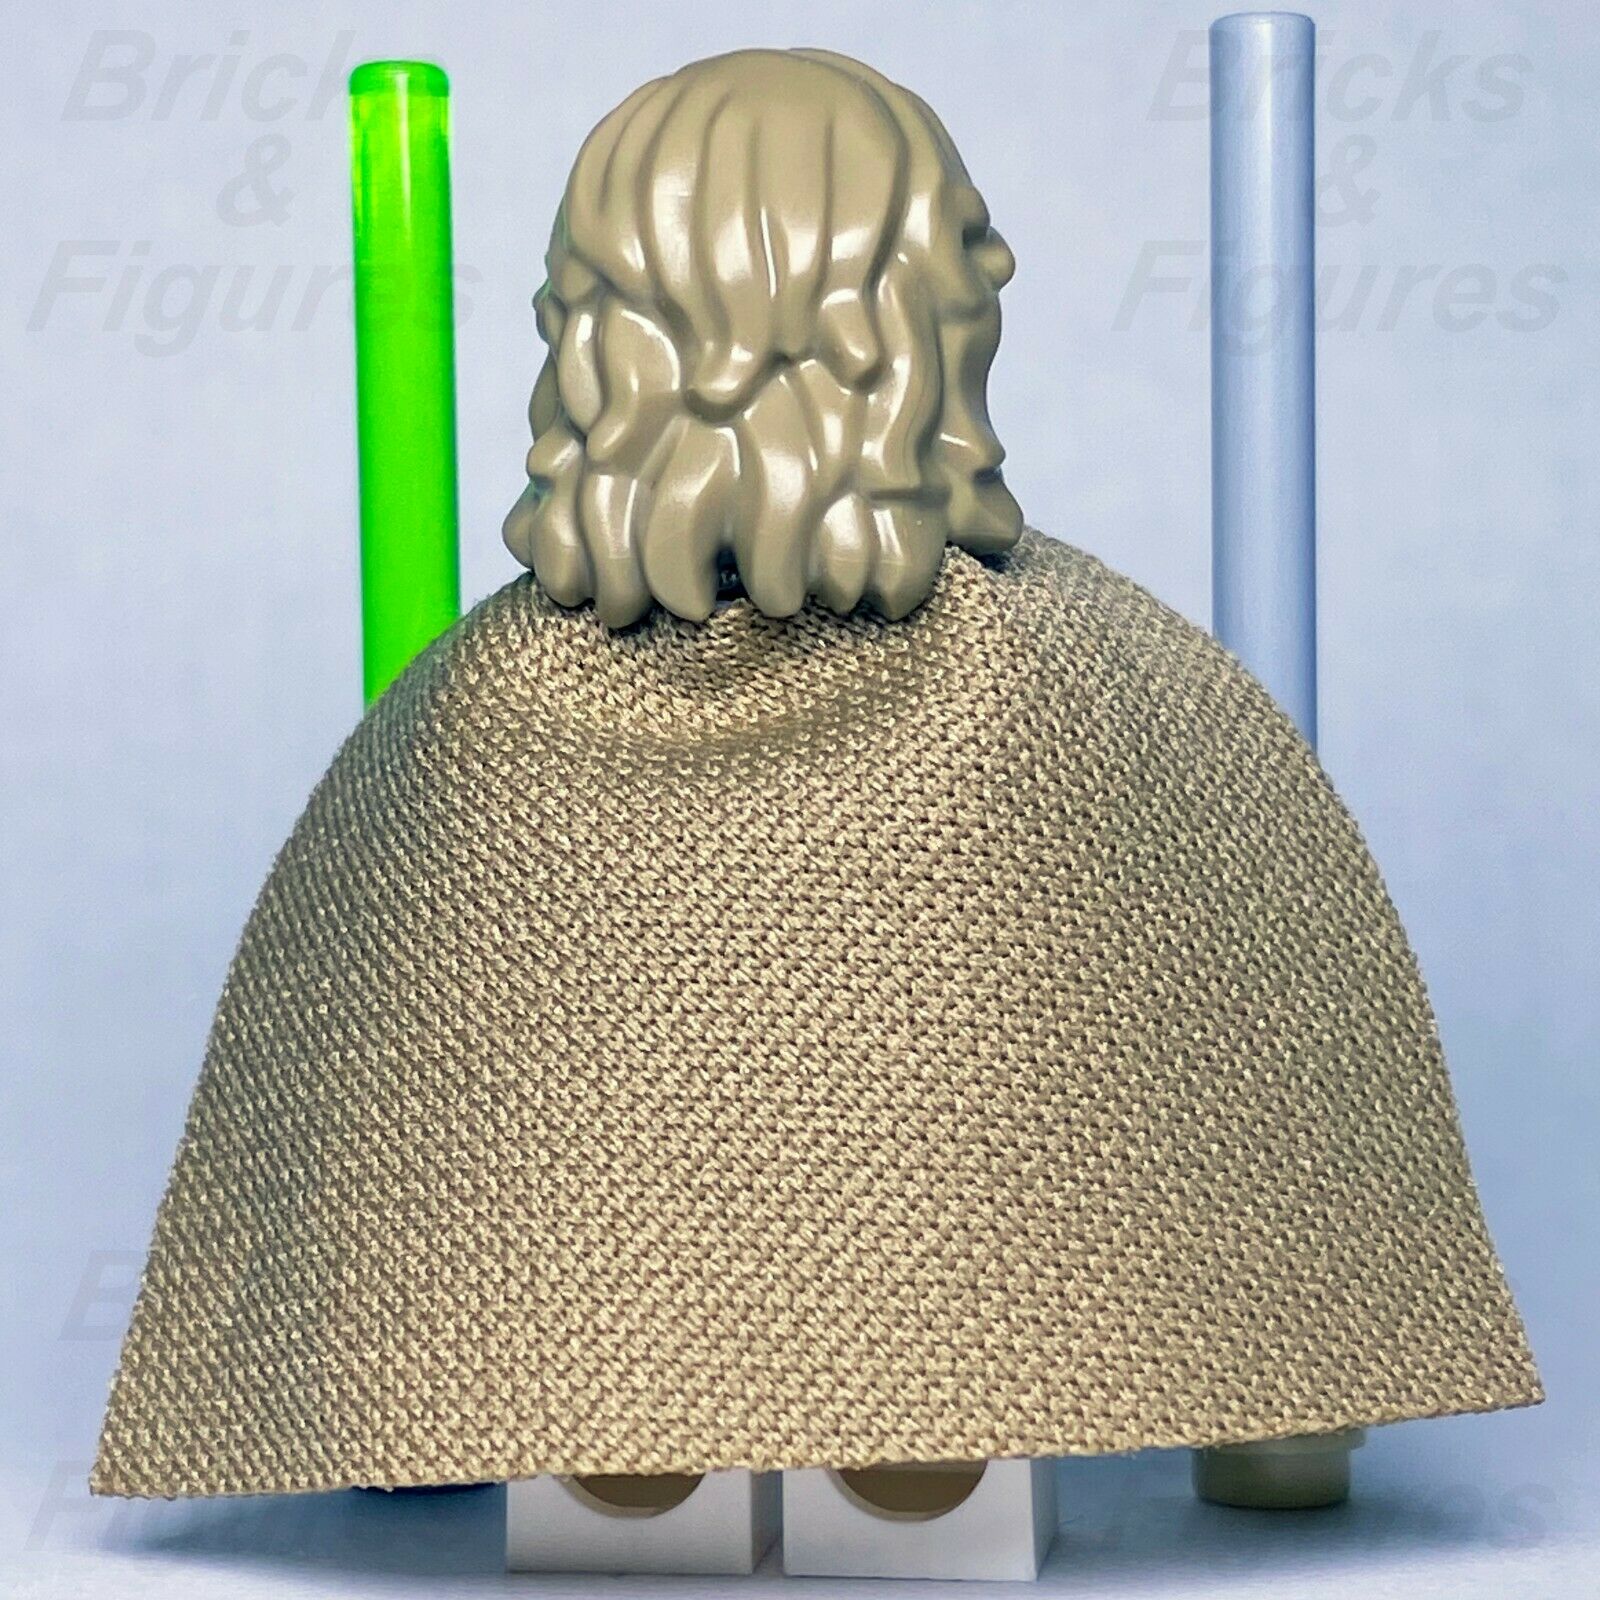 Star Wars LEGO Luke Skywalker Old Jedi Master with Lightsaber Minifig 75200 - Bricks & Figures